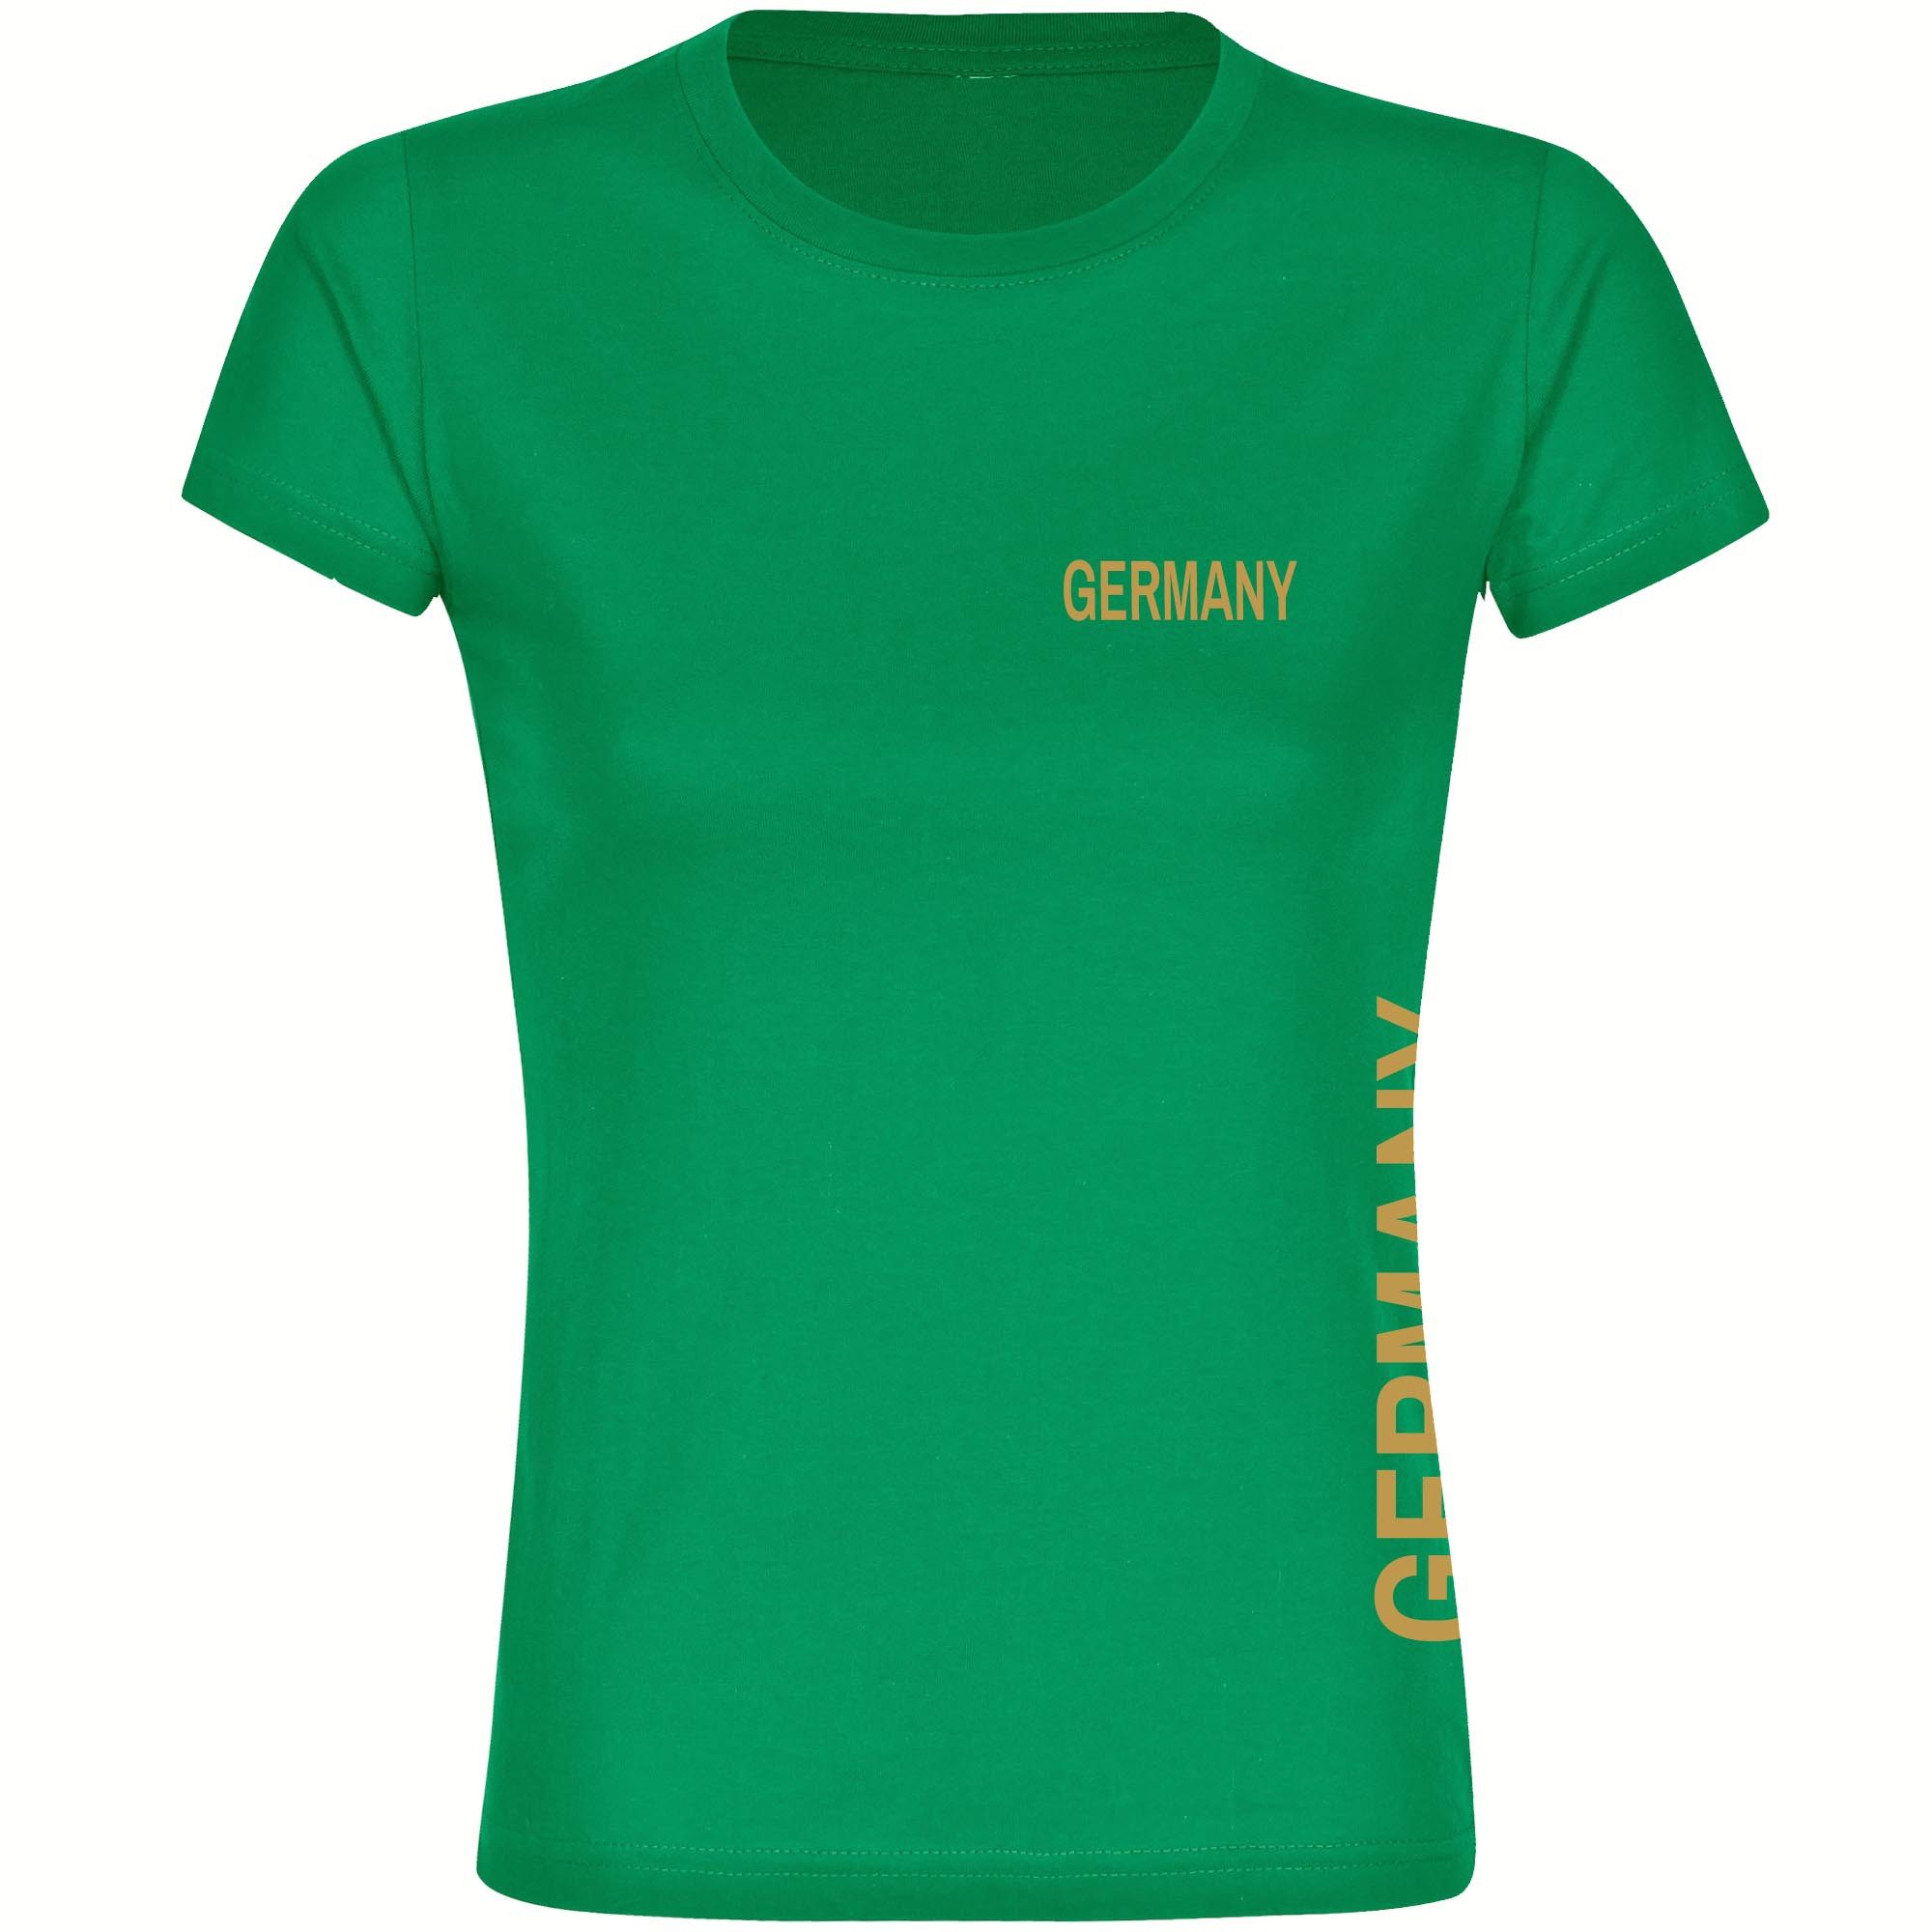 multifanshop T-Shirt Damen Germany - Brust & Seite Gold - Frauen